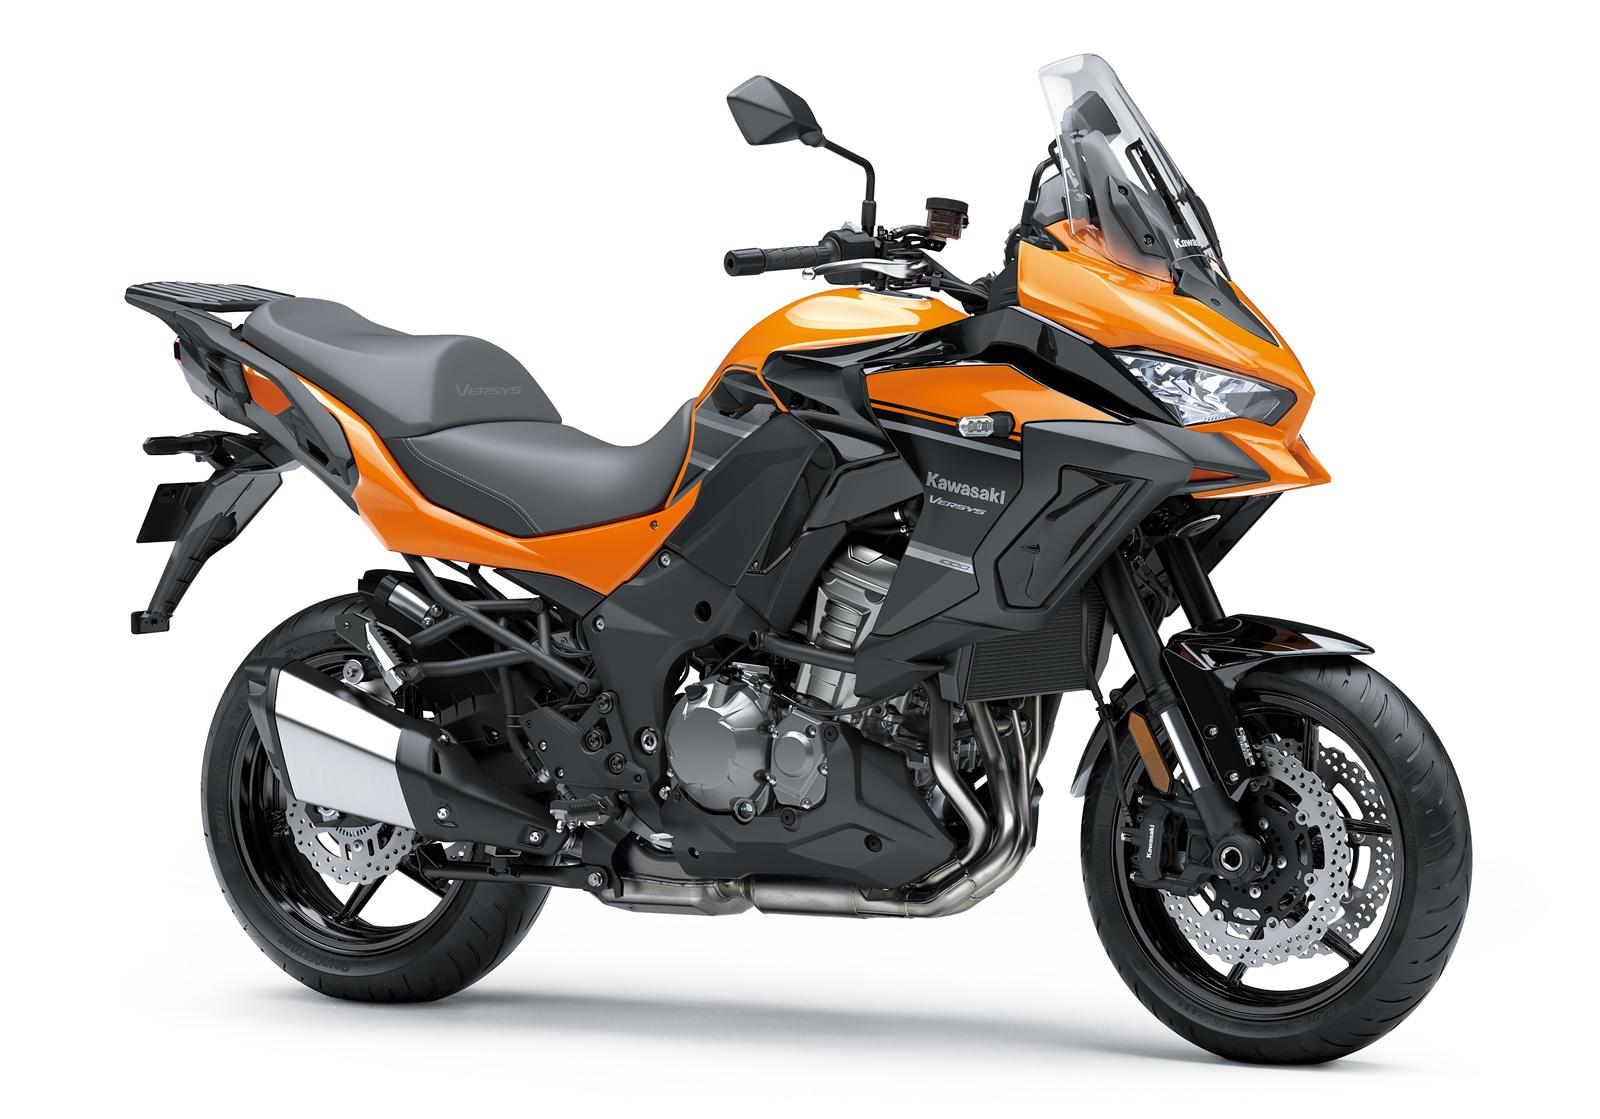 Kawasaki Versys 1000 2020: công nghệ hiện đại, sản xuất giới hạn